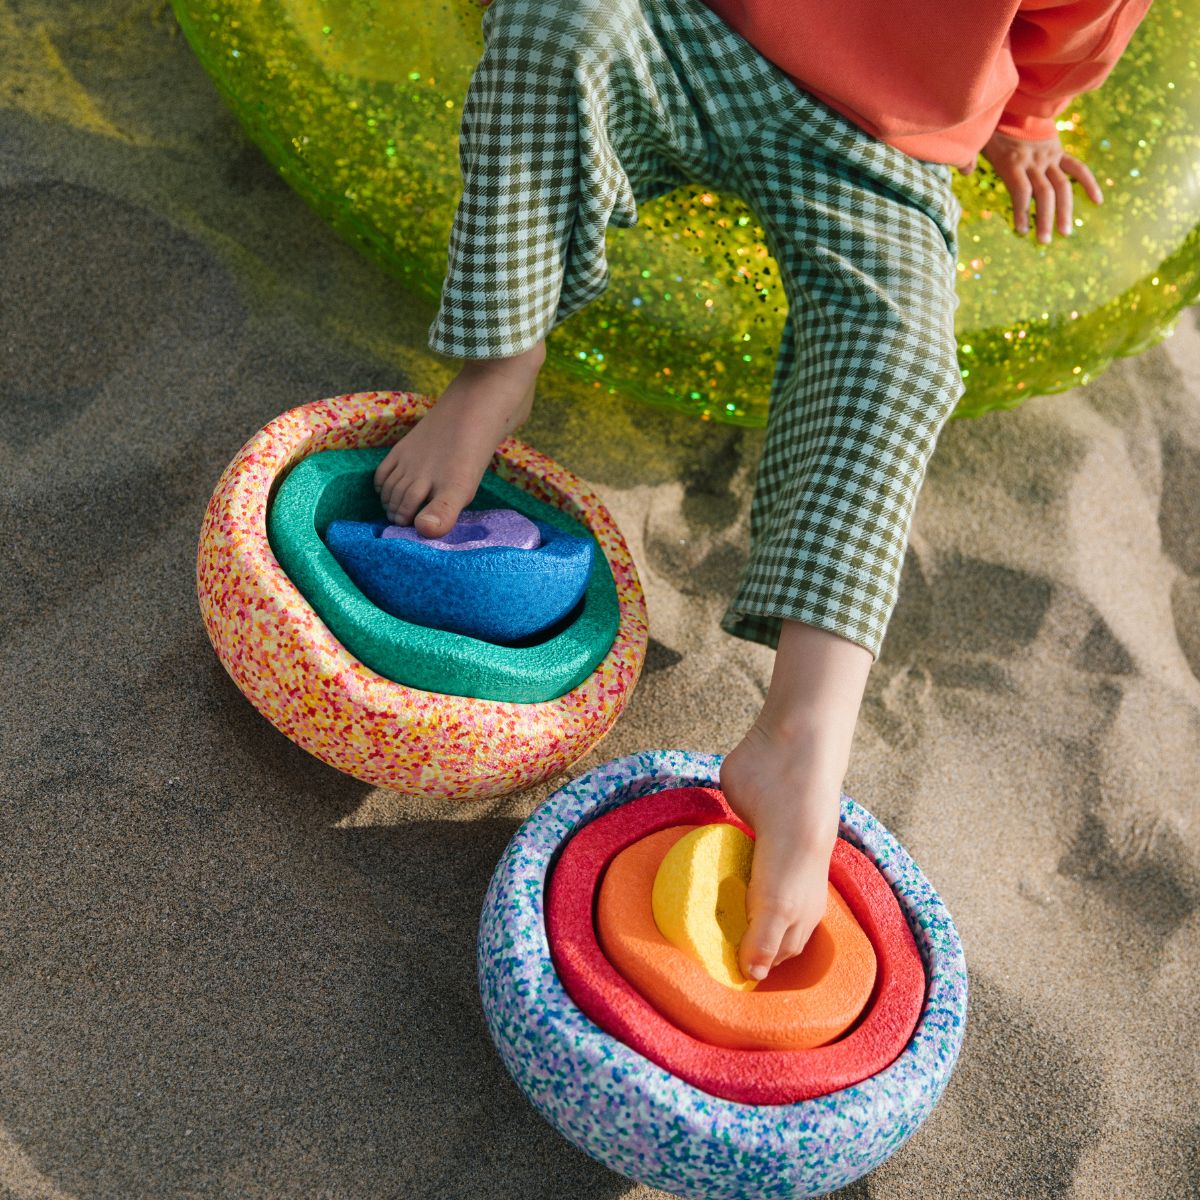 De Stapelstein Original summer rainbow set classic is superleuk open einde speelgoed voor je kindje. Met dit speelgoed is van alles mogelijk. Bouw er een toren mee, leer erop te balanceren, combineer ze met de andere Stapelstein stenen of gebruik ze als obstakel in een zelfgemaakt parcours. VanZus